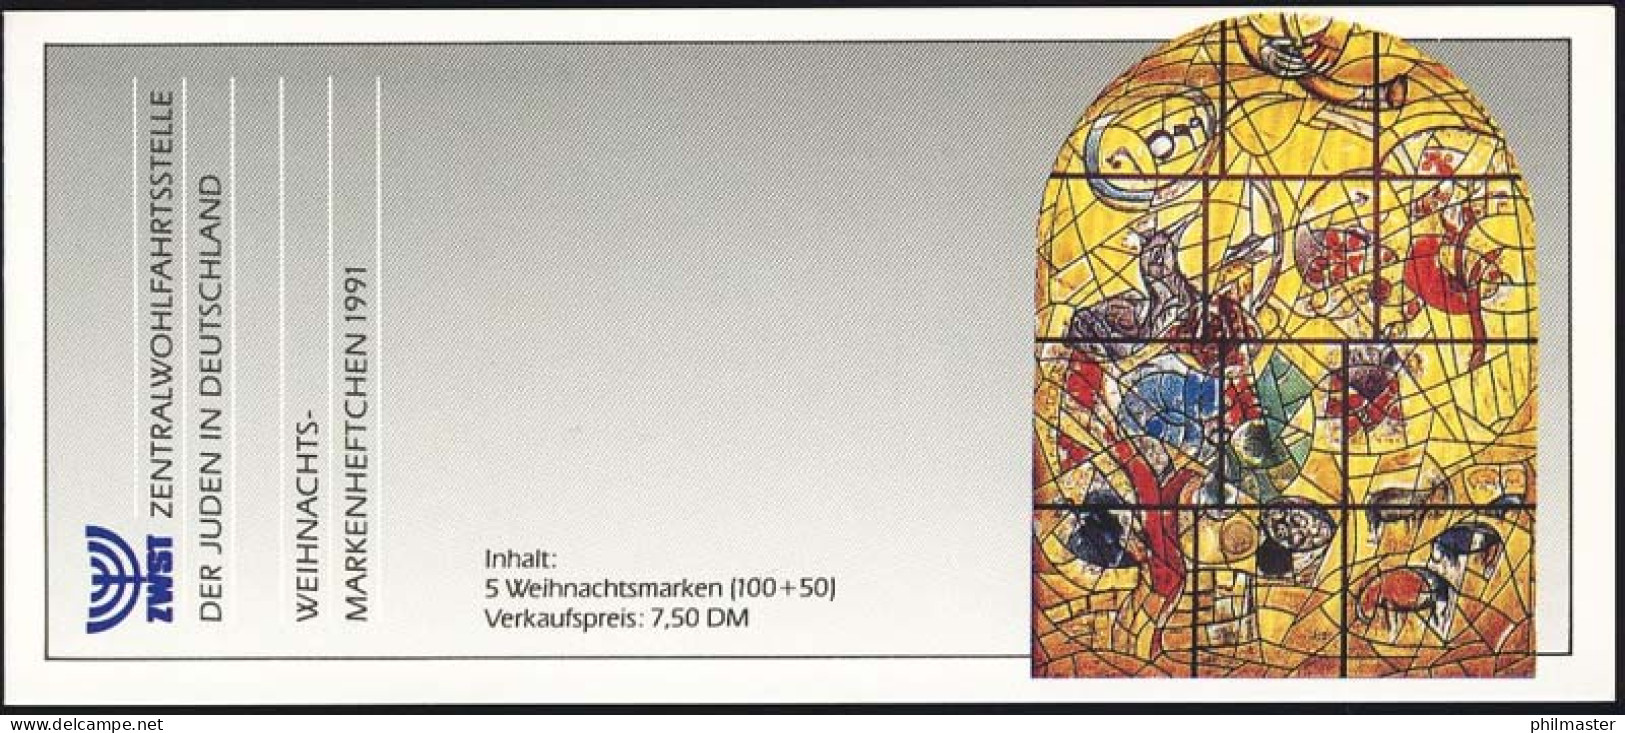 ZWStJ/Weihnachten 1991 Stamm Des Joseph 100 Pf, 5x1581, Postfrisch - Judaika, Judentum